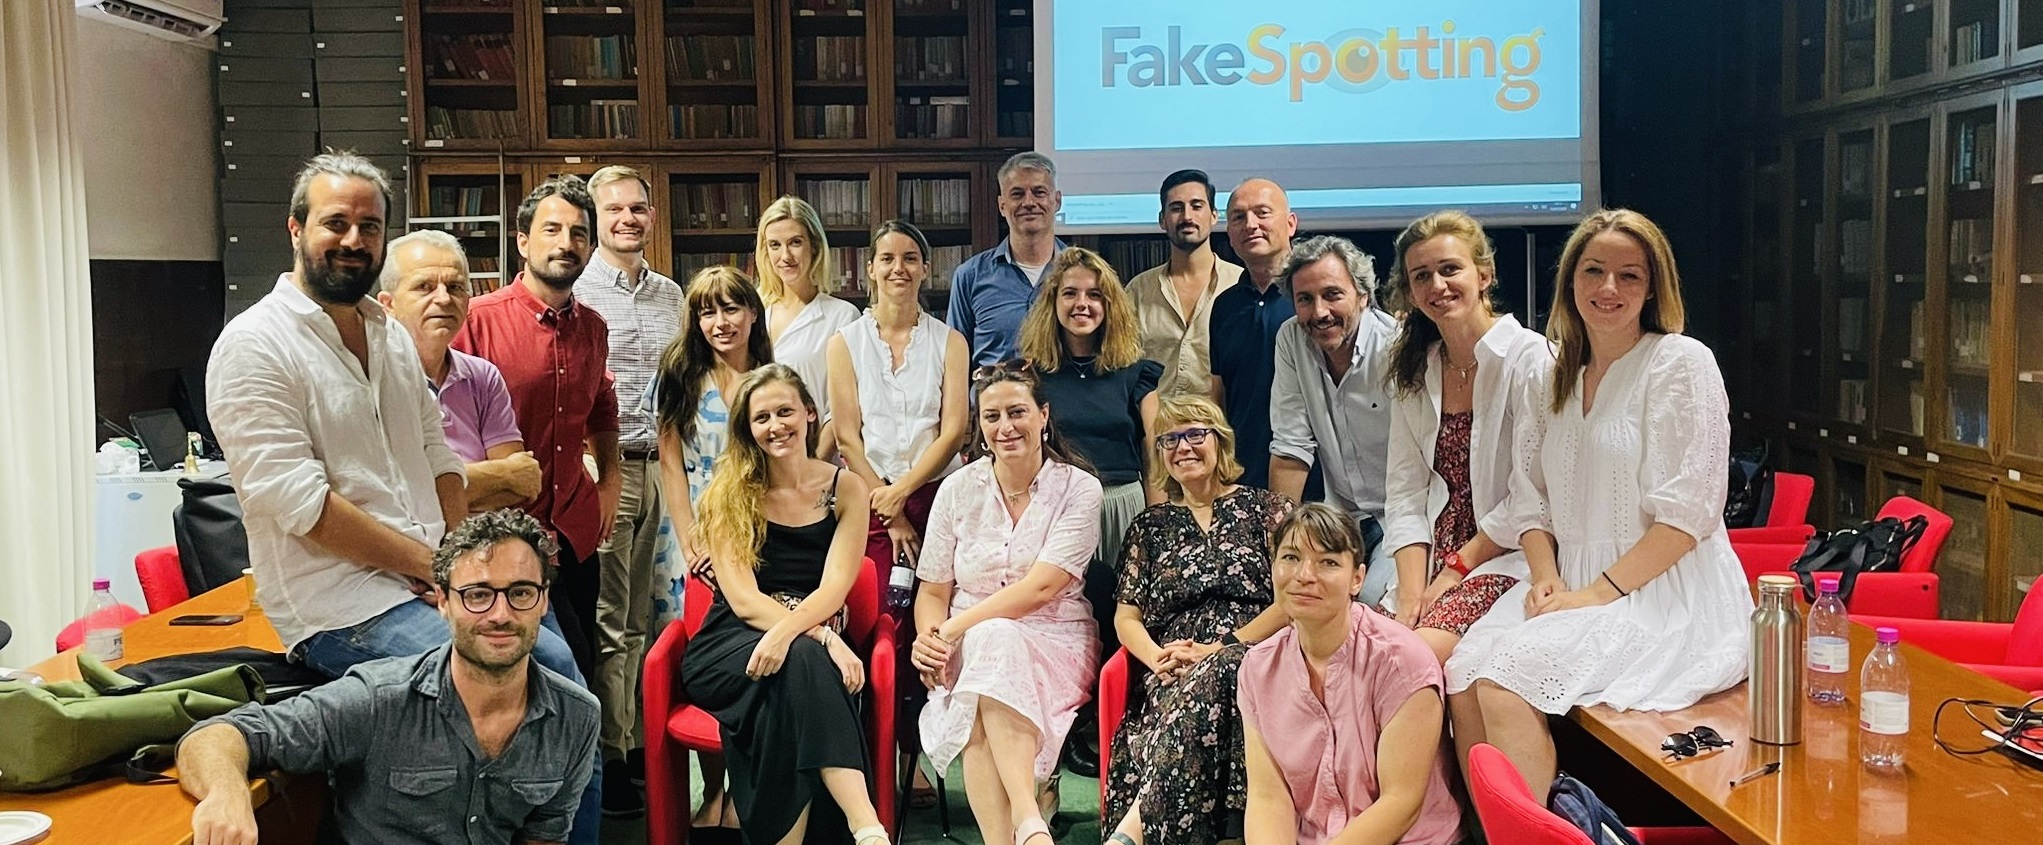 Departamenti i Gazetarisë dhe Komunikimit merr pjesë në takimin final të Projektit Fakespotting në Universitetin e Bolonjës në Itali